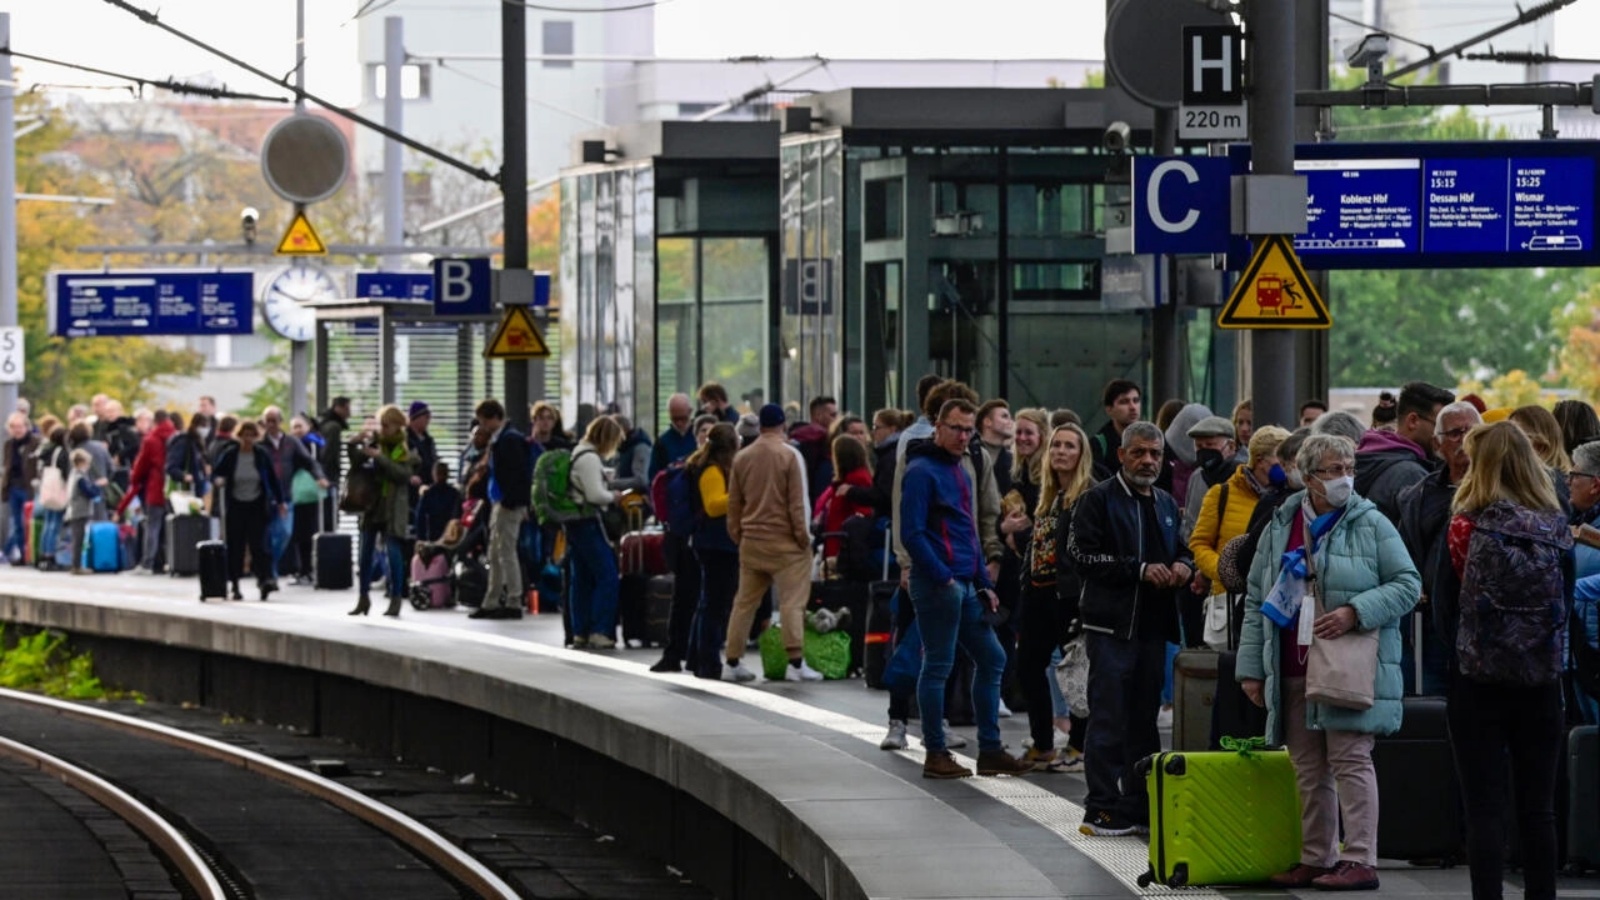 خدمات السكك الحديدية في شمال ألمانيا لمدة ثلاث ساعات، مما تسبب في فوضى سفر آلاف الركاب